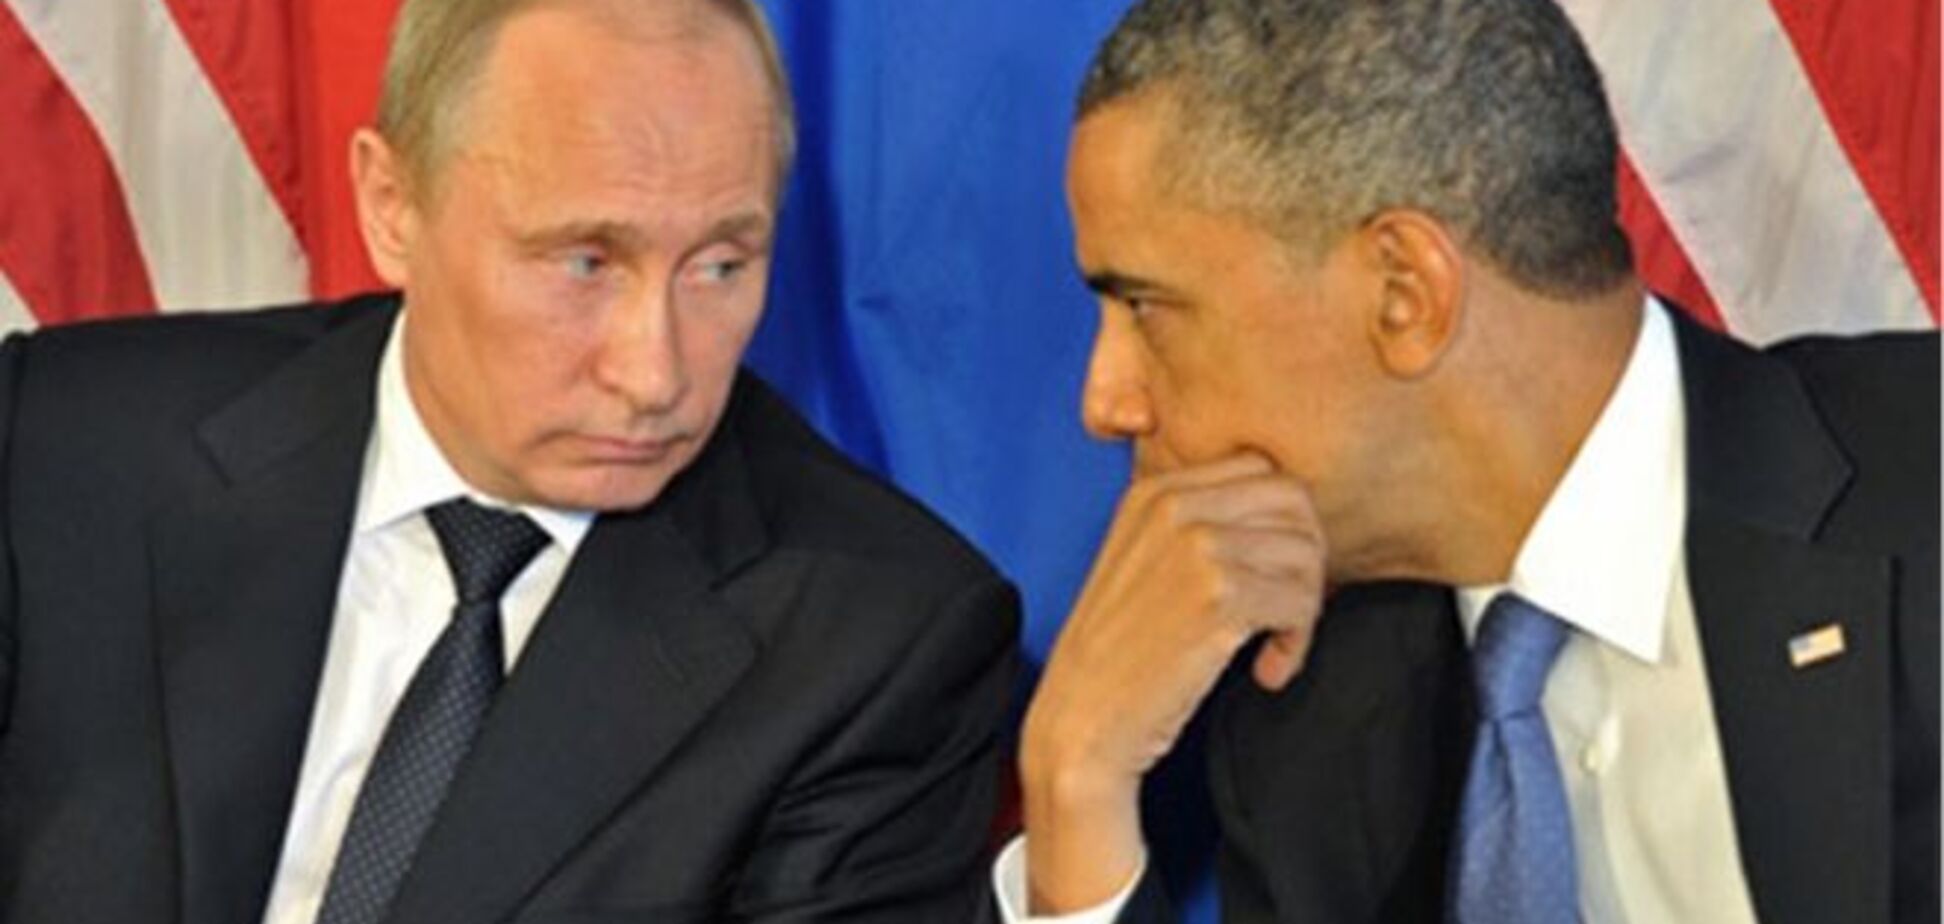 ЗМІ: Обама готовий зустрітися з Путіним за наявності порядку денного